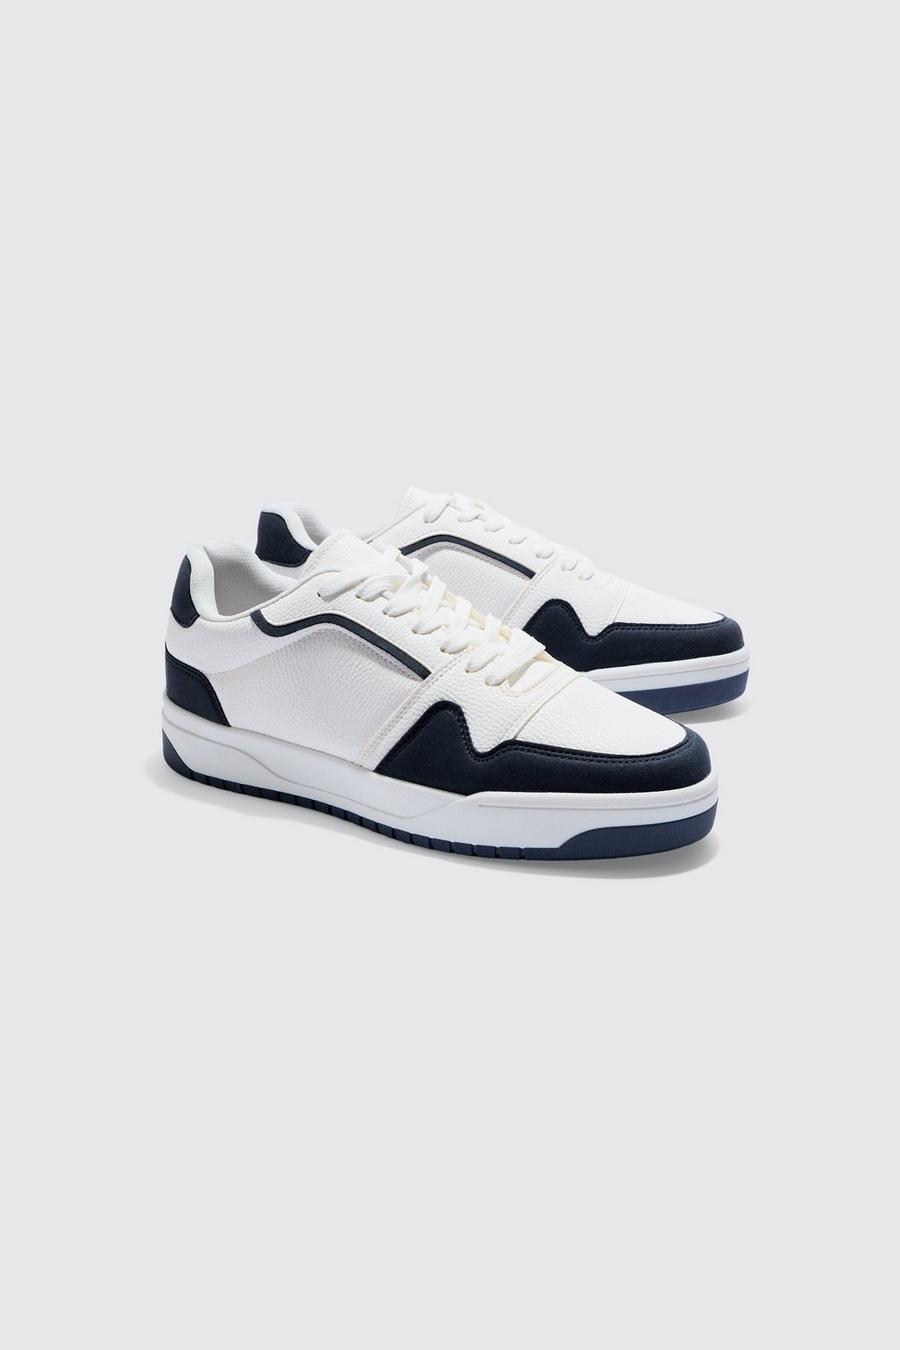 White Reebok x Maison Margiela Zig 3d Storm Sneaker Schuhe gw5008 Größe 4-12